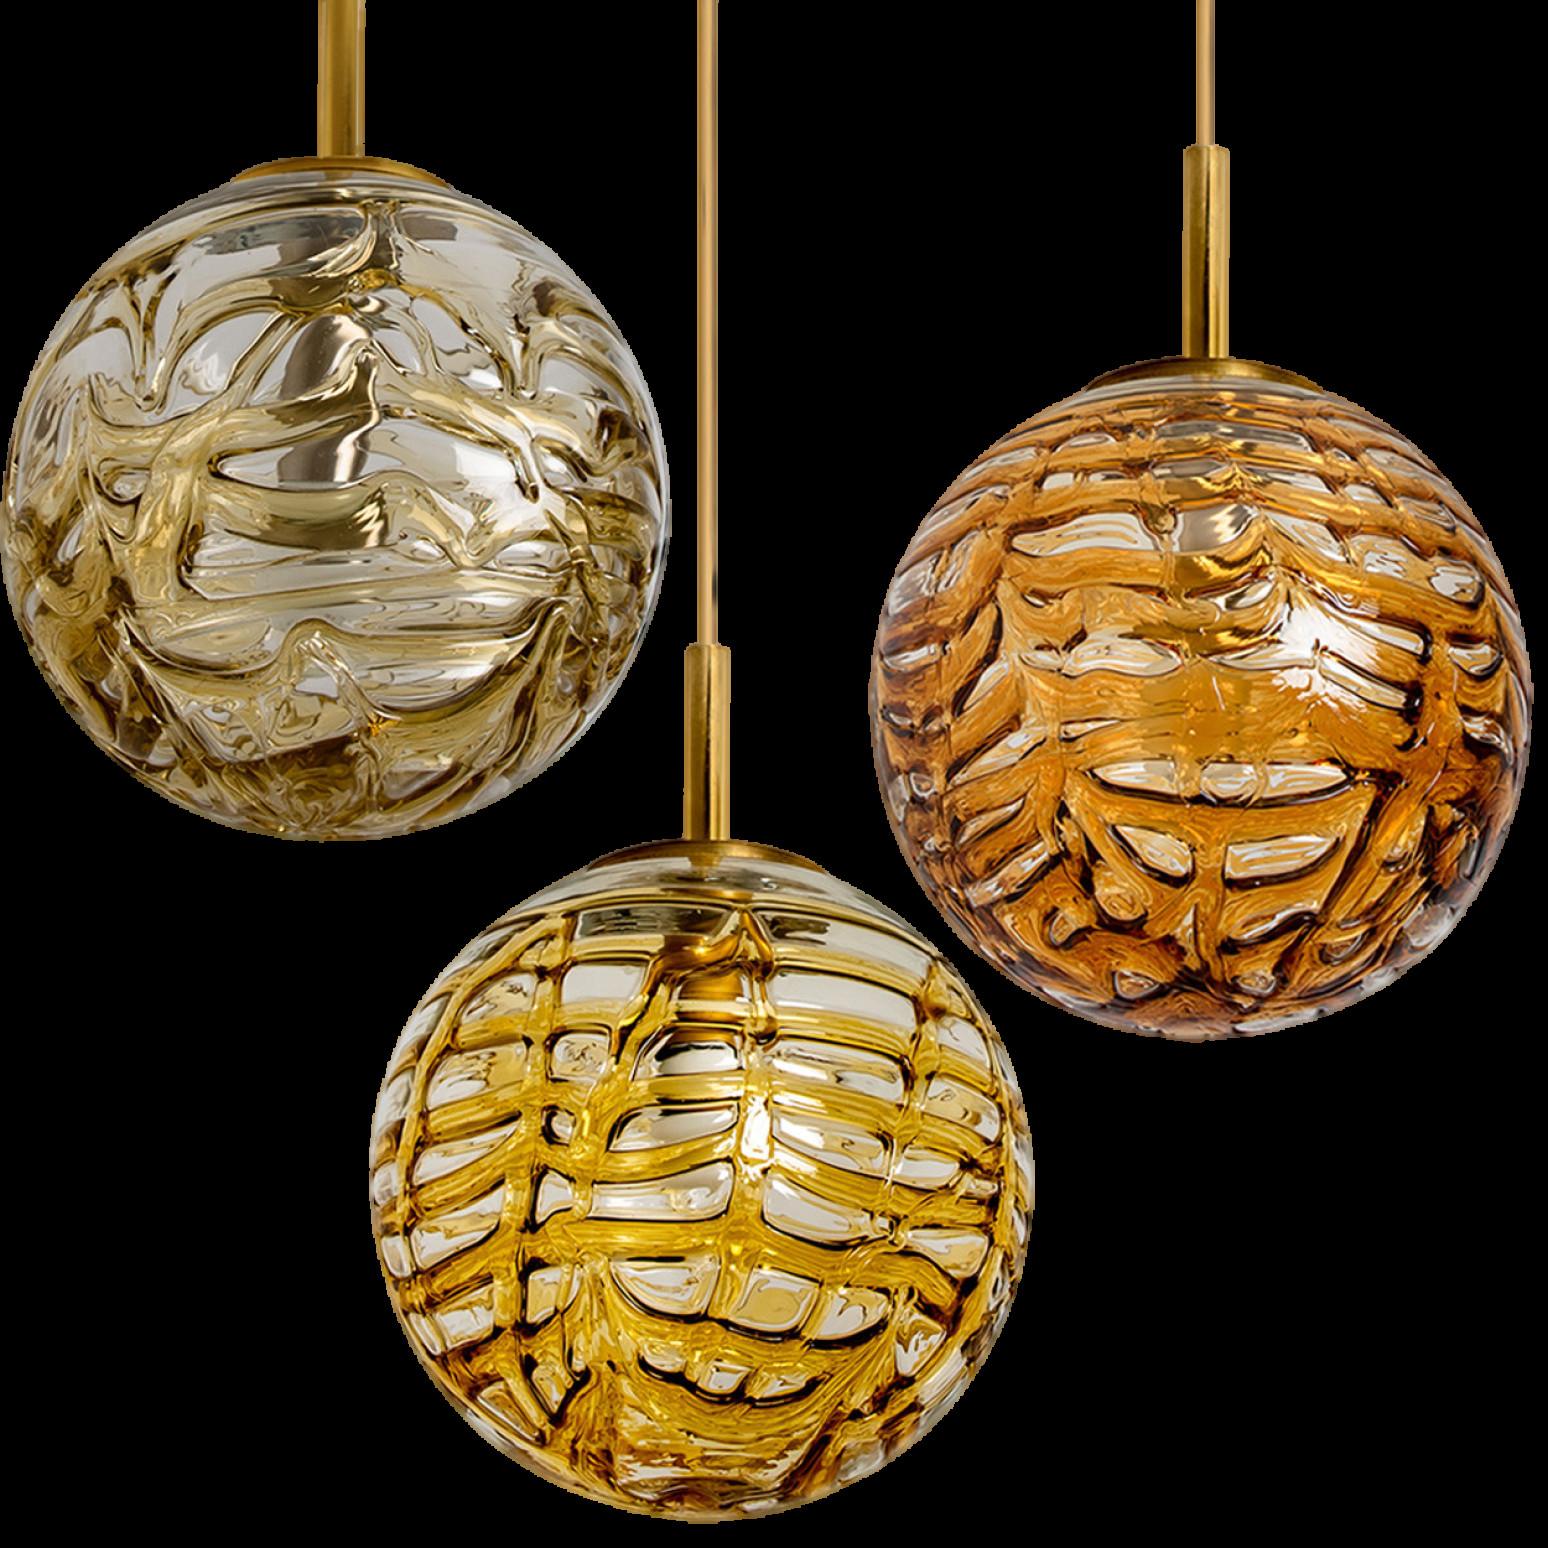 1 des 3 globes Doria Leuchten (en collaboration avec Murano) dans le style de Venini, fabriqués, vers 1960. Une véritable pièce de résistance.

Abat-jour haut de gamme en verre épais de Murano, composé de verres superposés dans les couleurs Taupe,